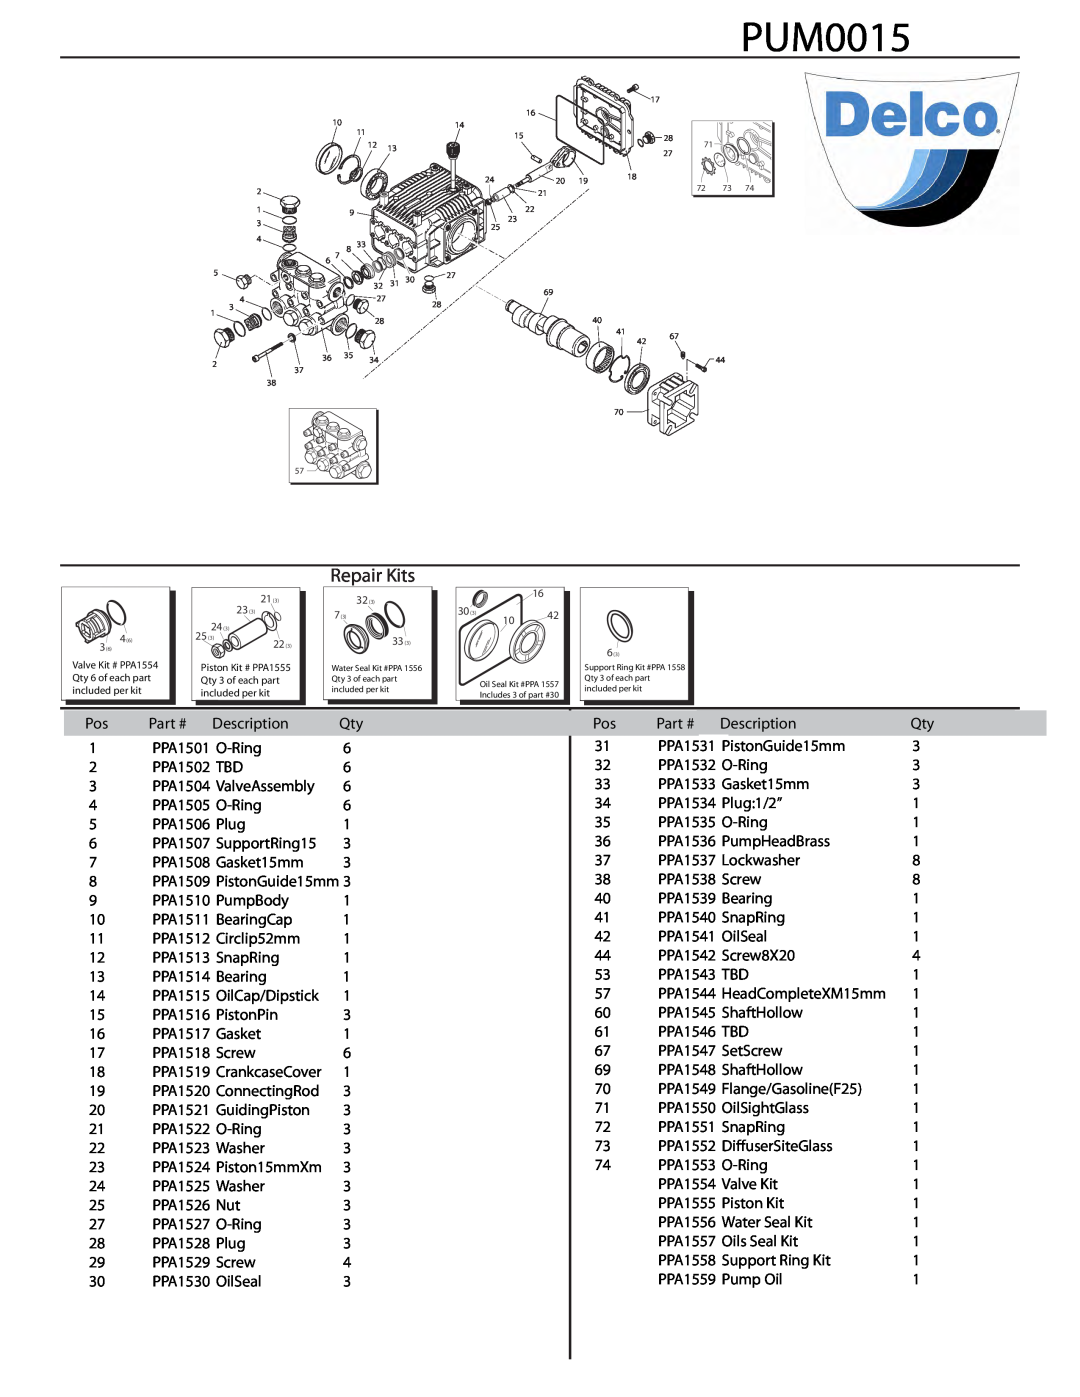 ACDelco PN 09301 A manual PUM0015, Repair Kits, Description 